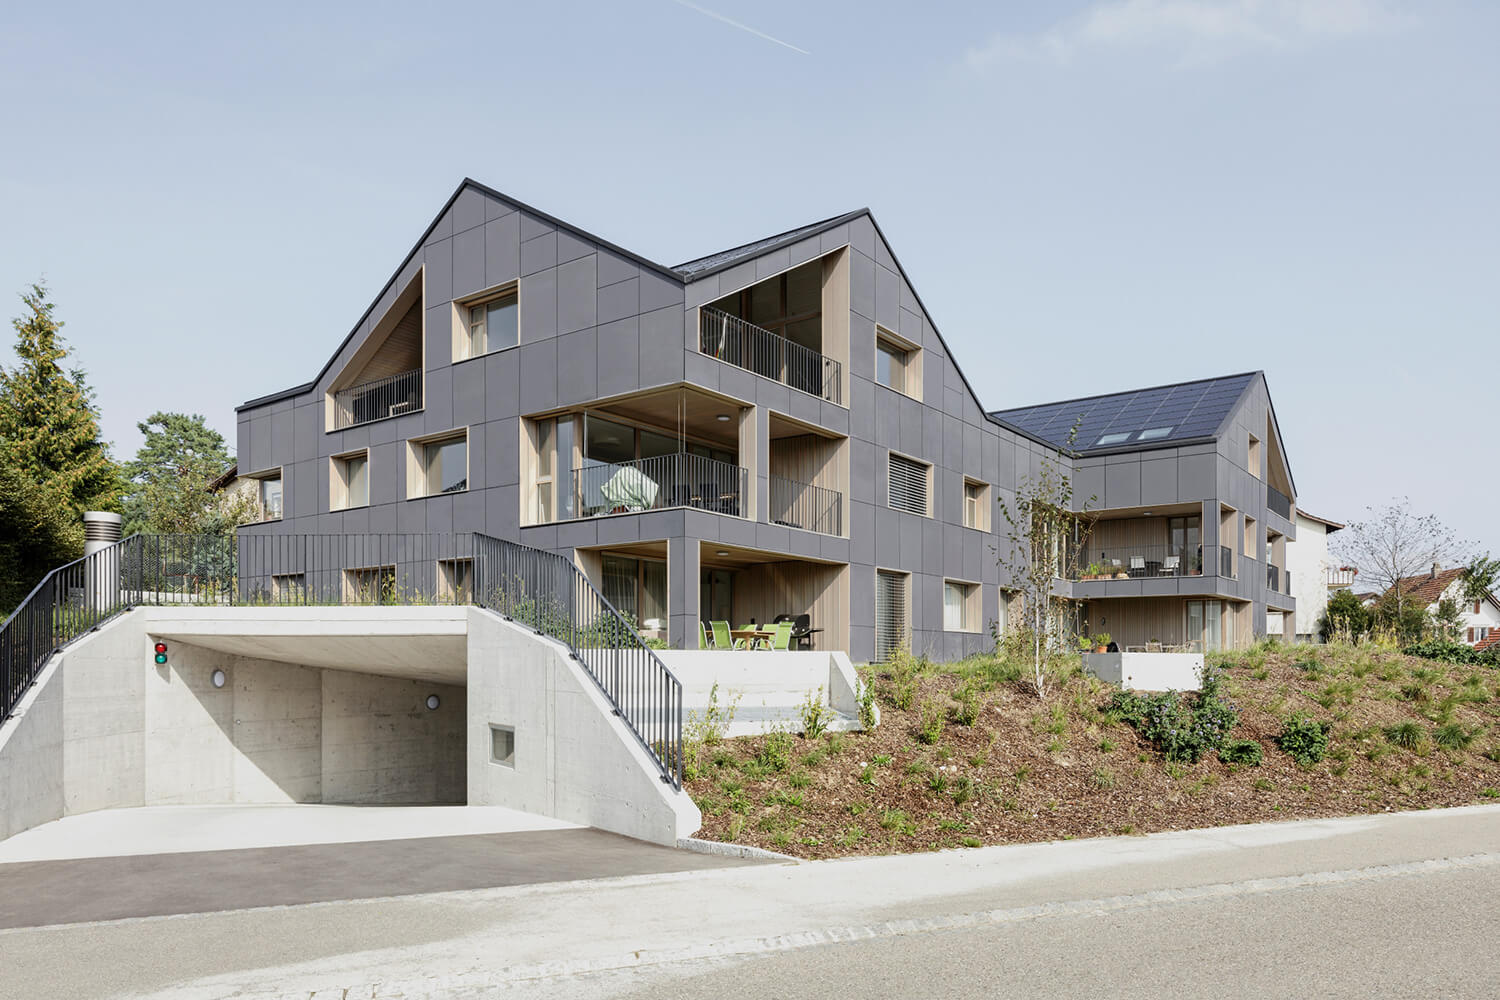 Casa plurifamiliare di Brütten raggiunge una completa indipendenza grazie all’impianto fotovoltaico installato.